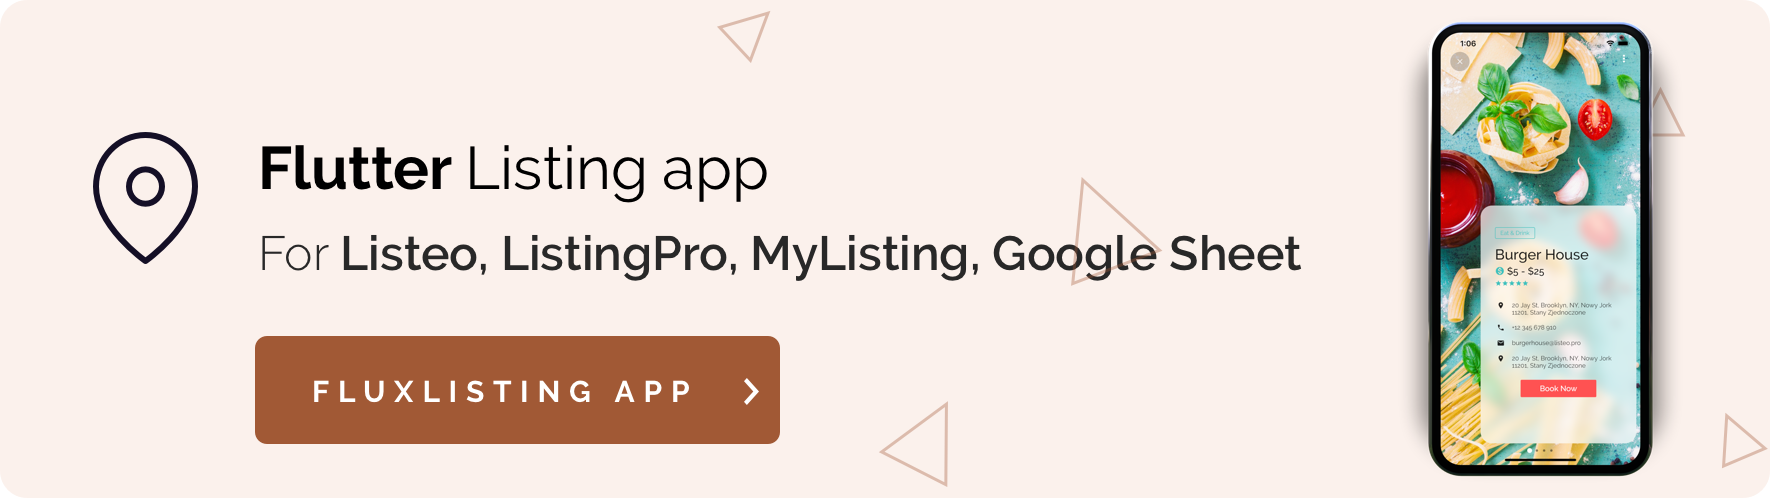 Fluxstore Pro - Flutter E-commerce Full App for Magento, Opencart, and Woocommerce - 34